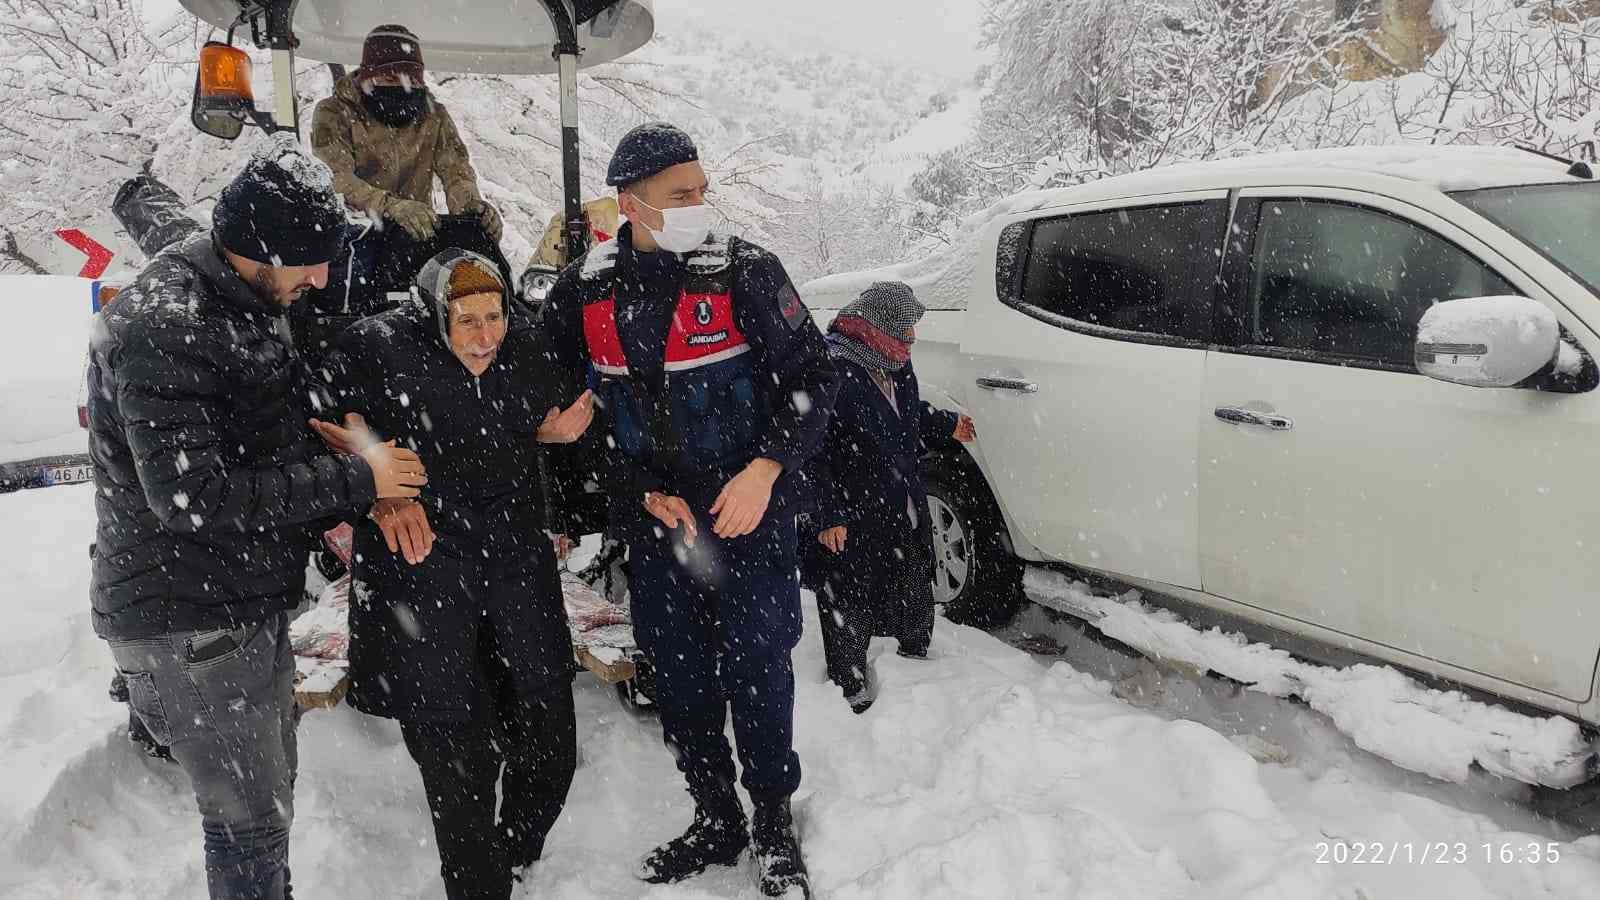 Jandarma yaşlı çifti sırtına alarak tahliye etti #kahramanmaras